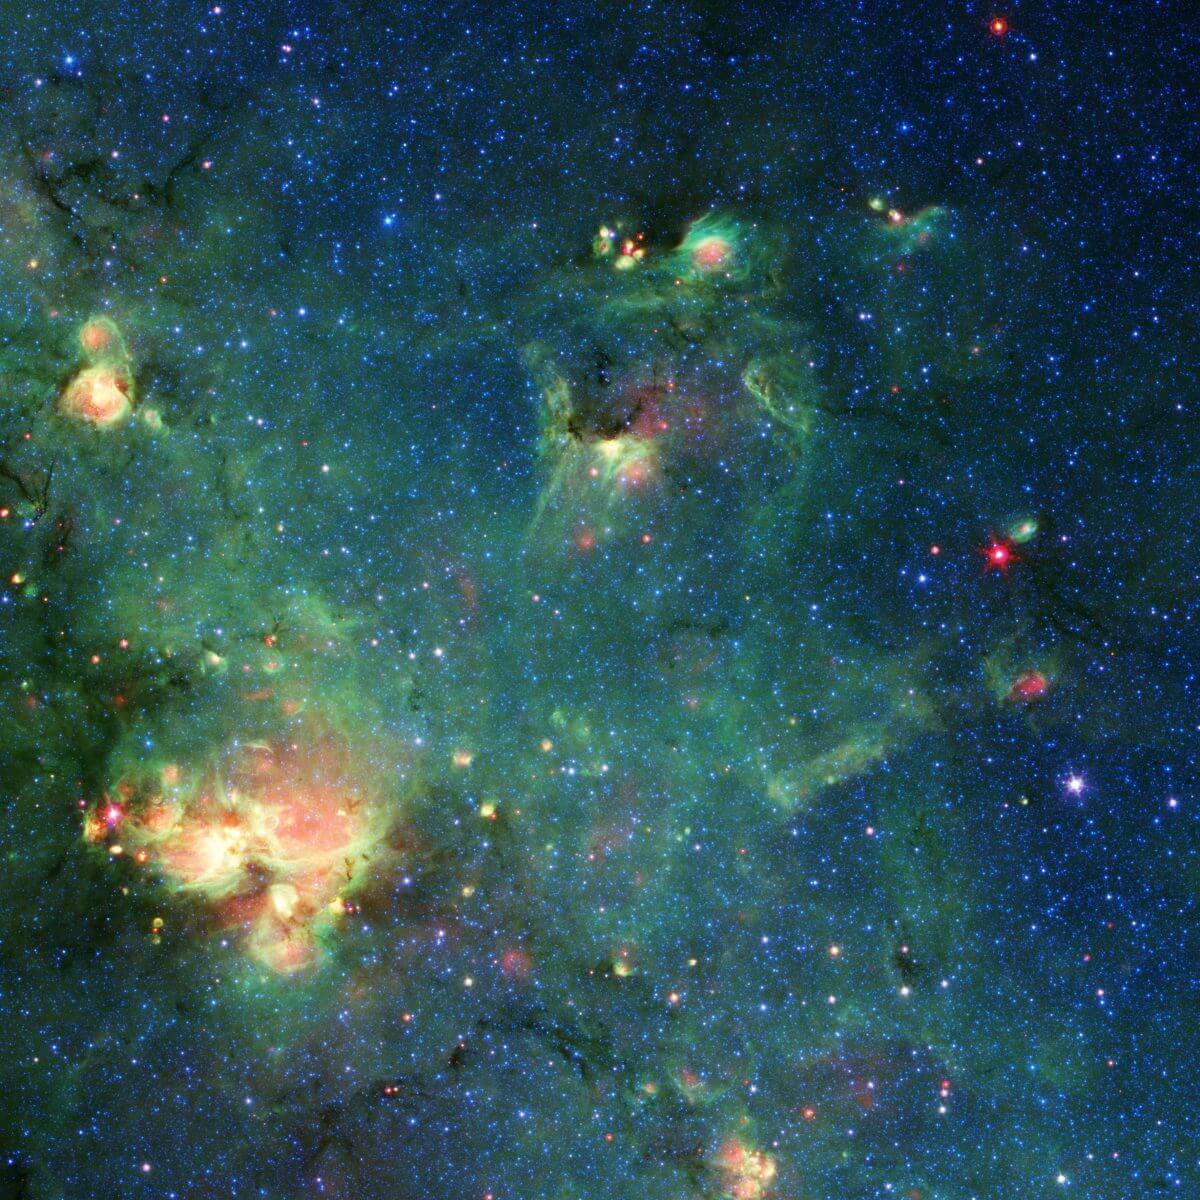 NASAが公開、宇宙望遠鏡が撮影した“あのモンスター”に似た星雲